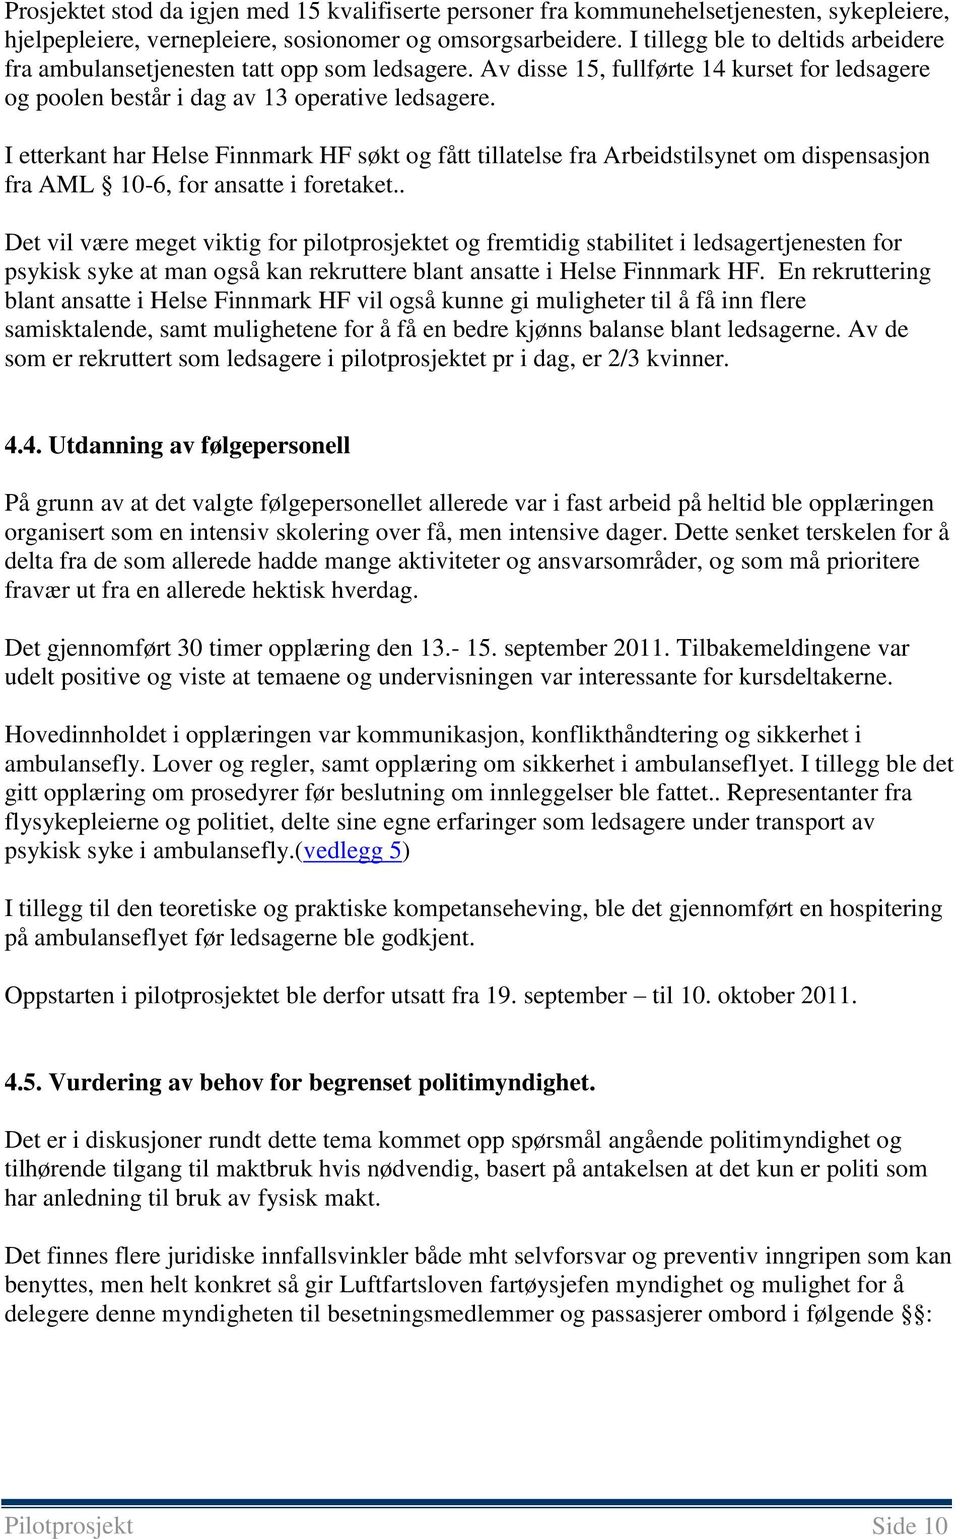 I etterkant har Helse Finnmark HF søkt og fått tillatelse fra Arbeidstilsynet om dispensasjon fra AML 10-6, for ansatte i foretaket.